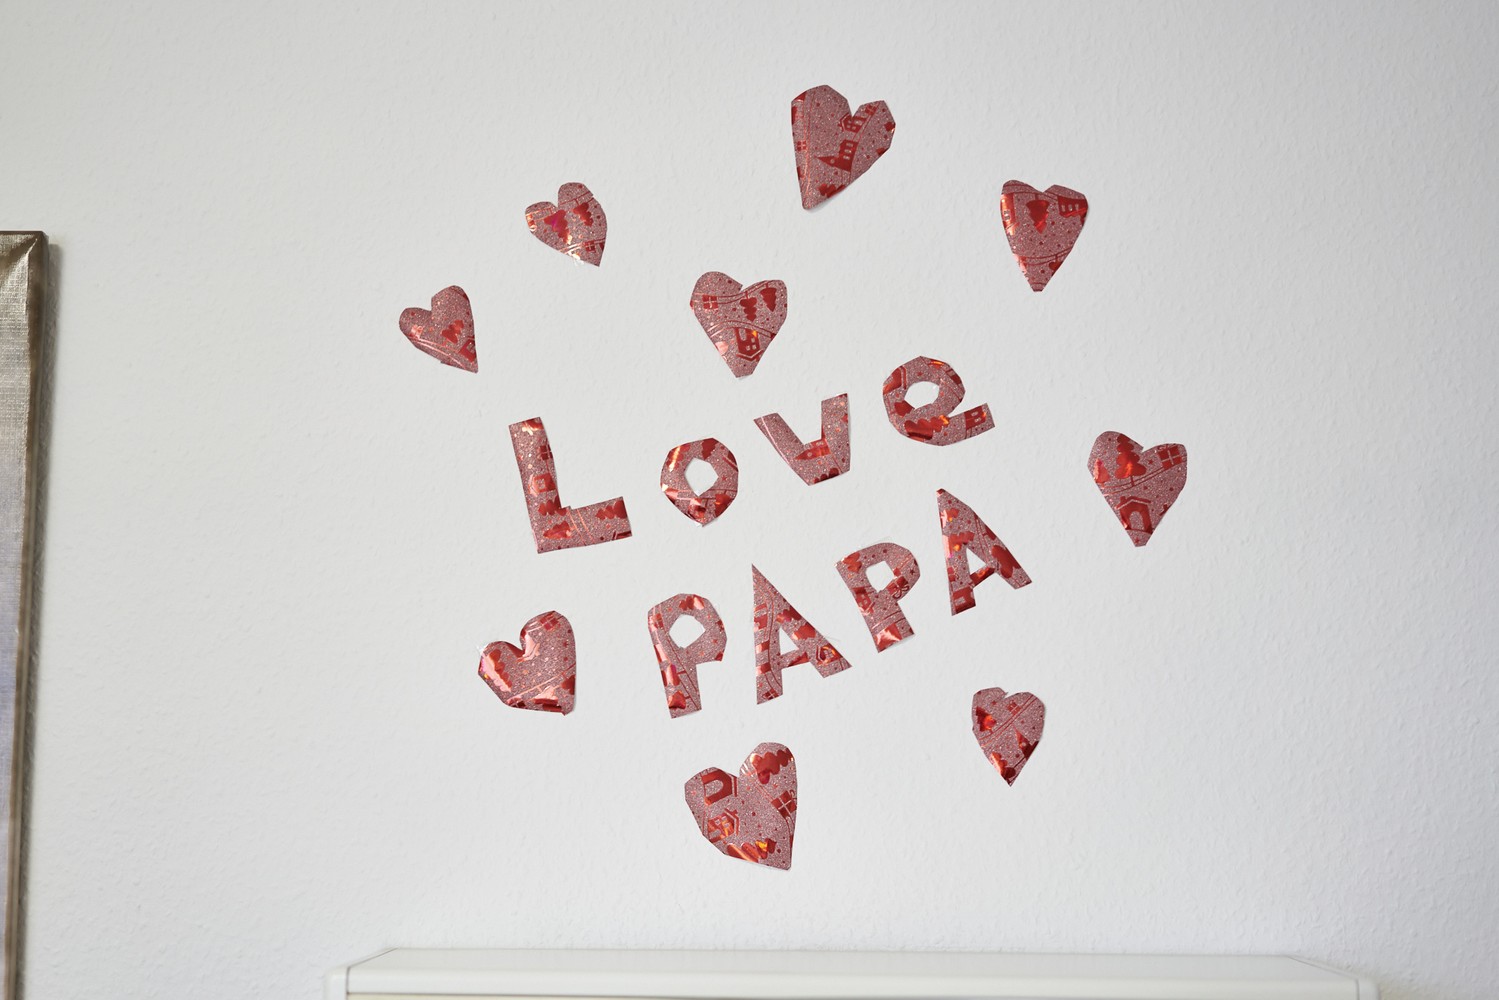 Gemaltes Bild zur Motivation mit der Botschaft "Love Papa"